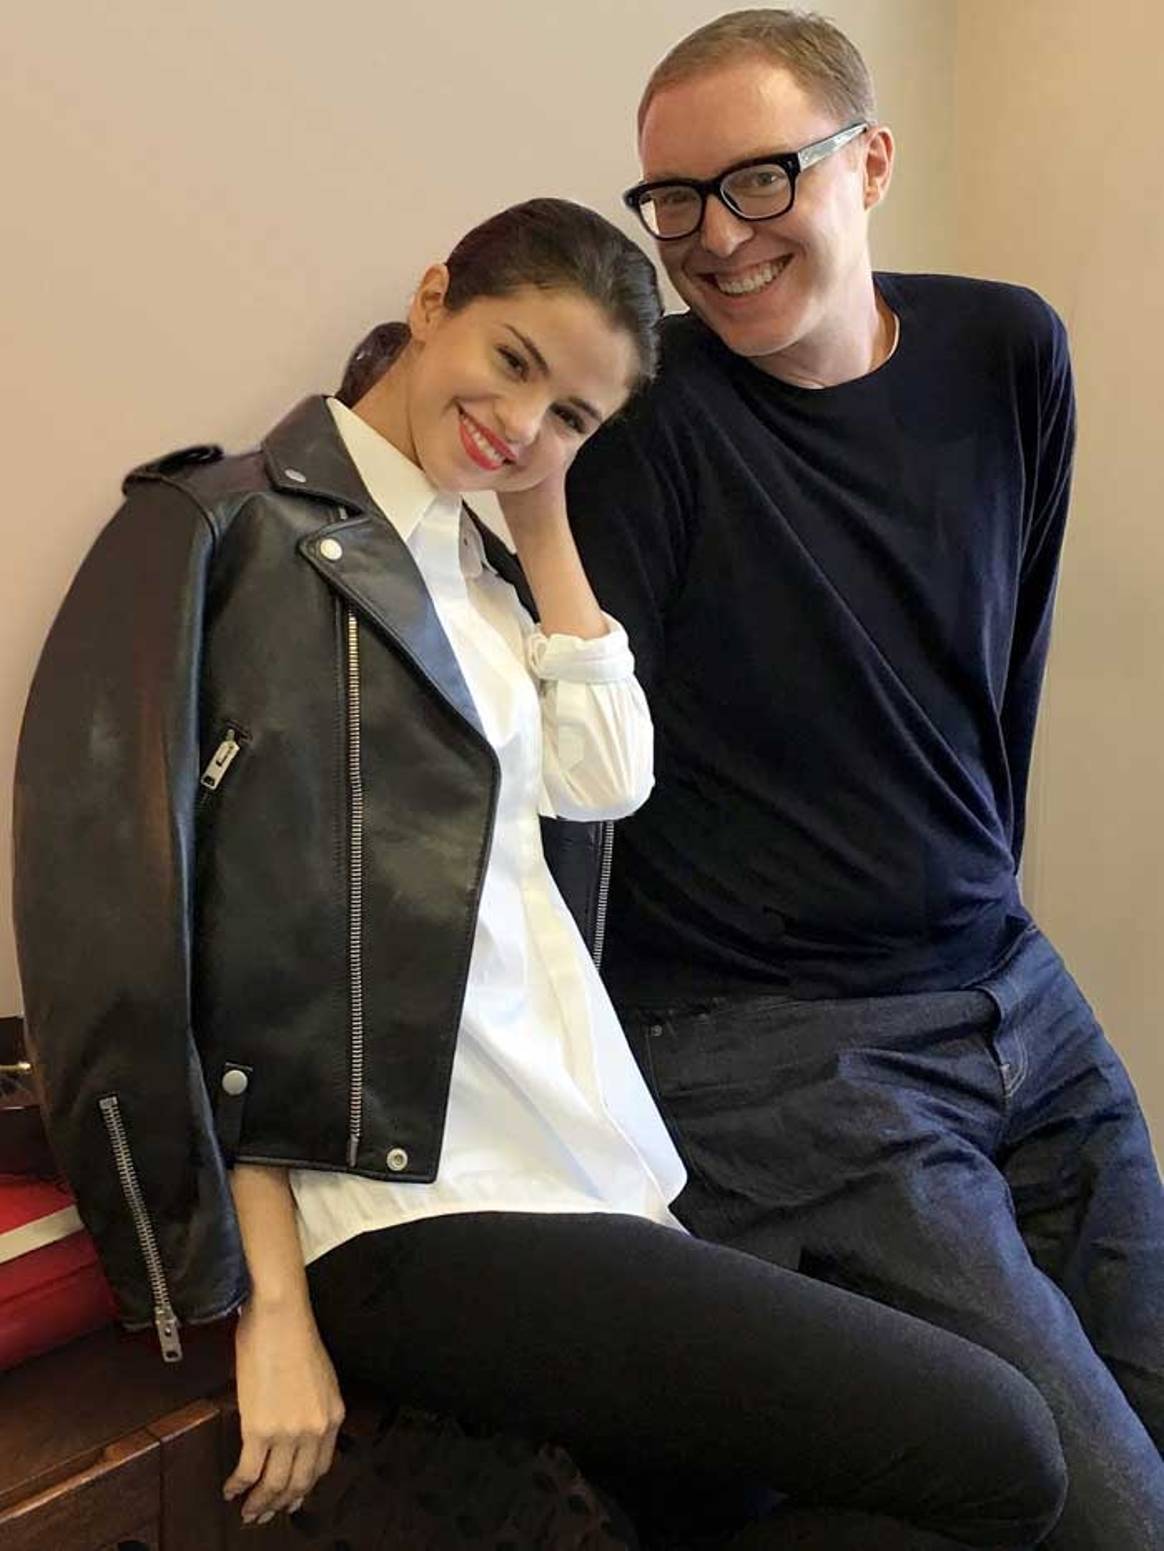 Selena Gomez Designing Clothes for Coach - Selena Announces Ready